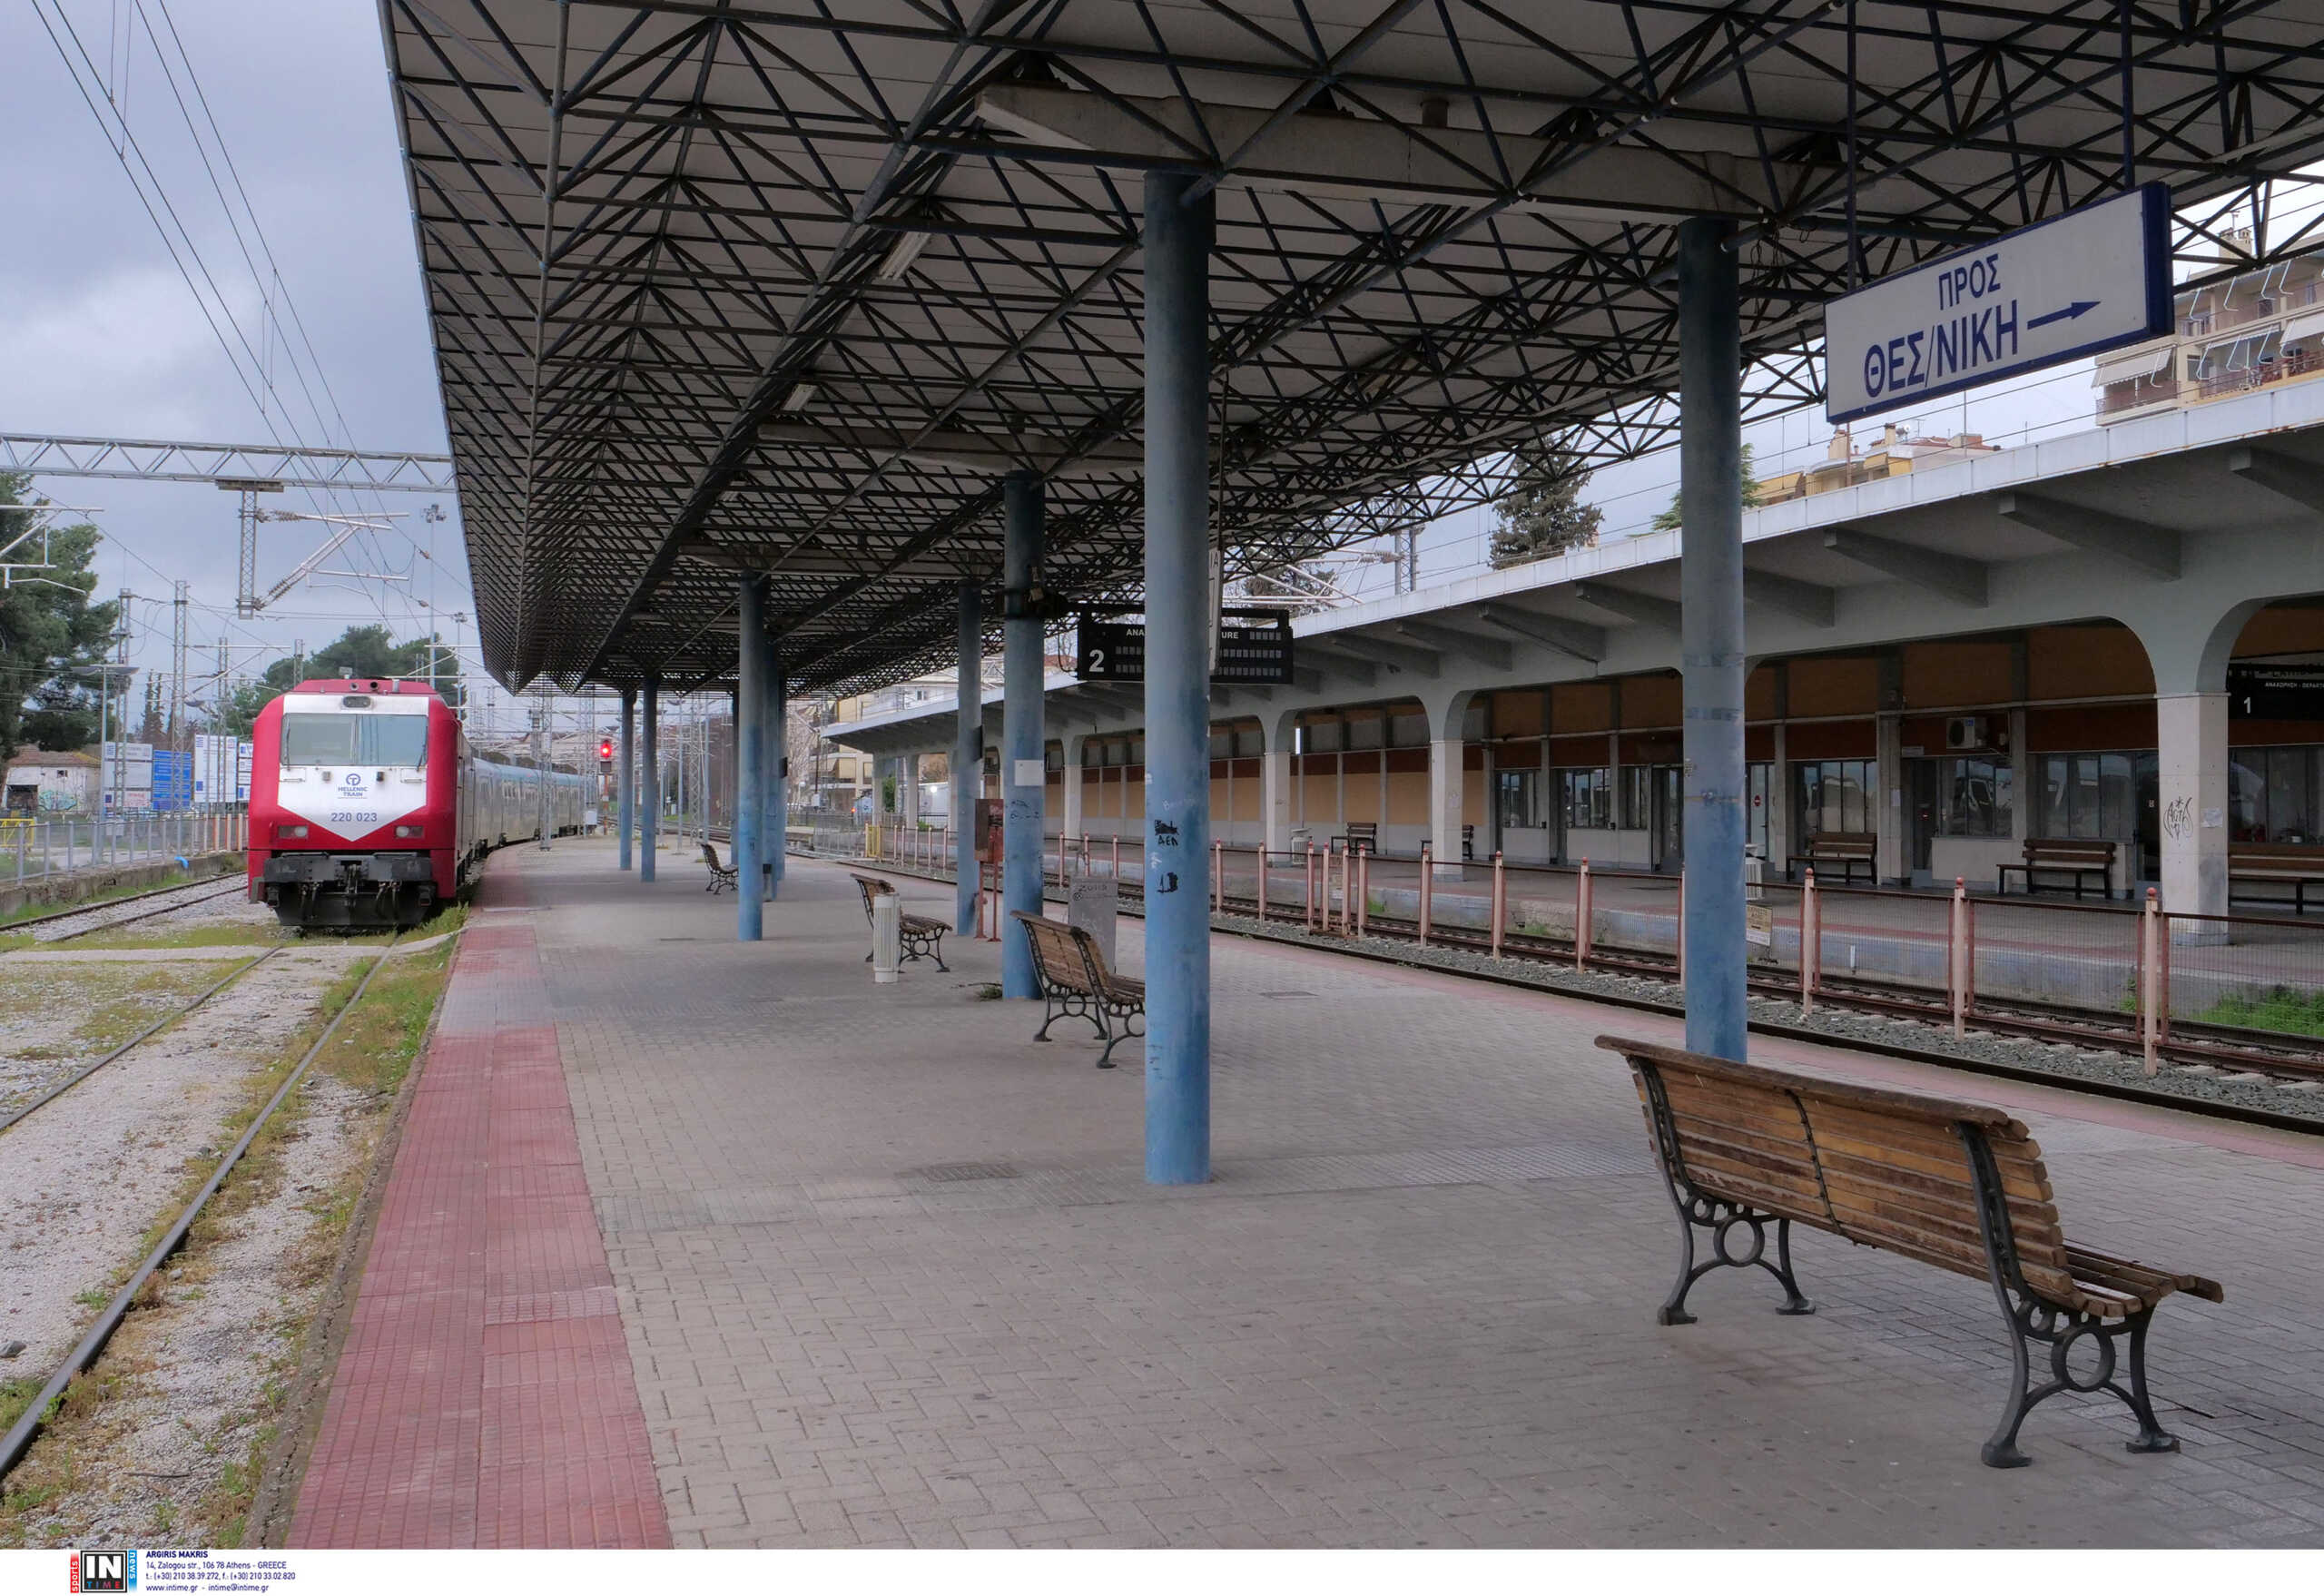 Νέες αποκαλύψεις για την κατάσταση των σιδηροδρόμων – Άνοιγαν σταθμούς αντί να φτιάξουν την τηλεδιοίκηση